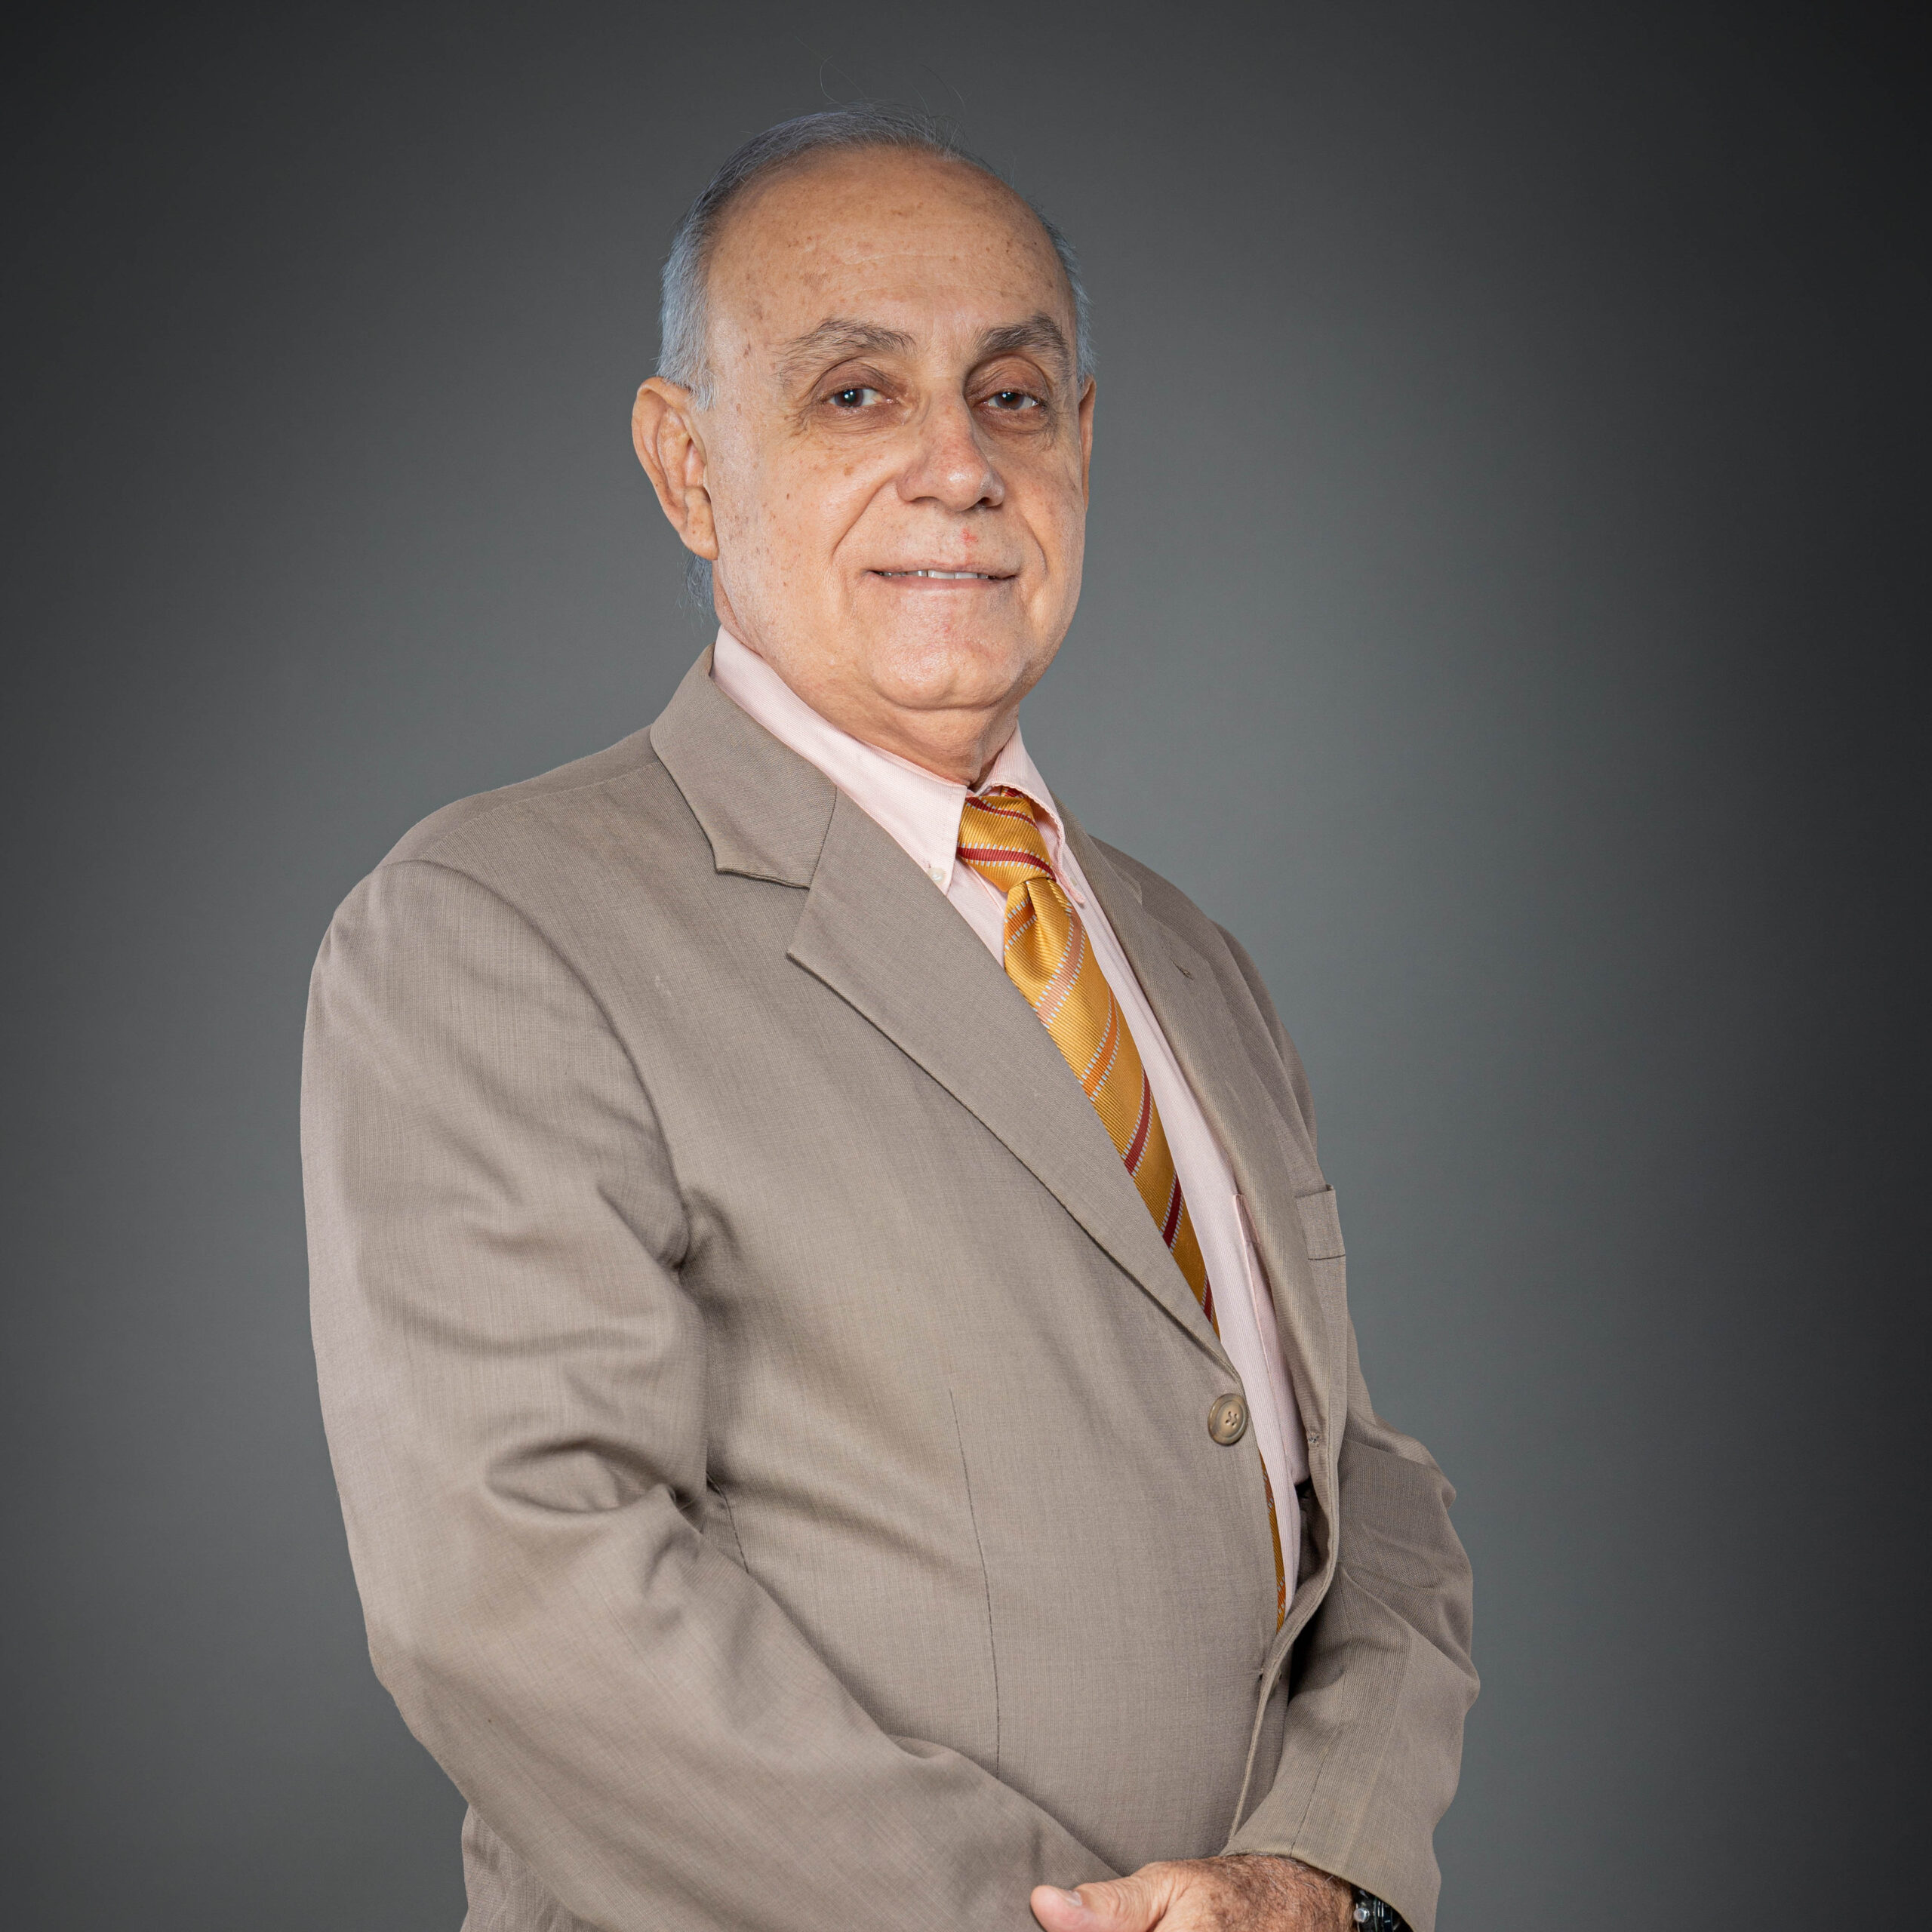 Carlos Lazo Vento